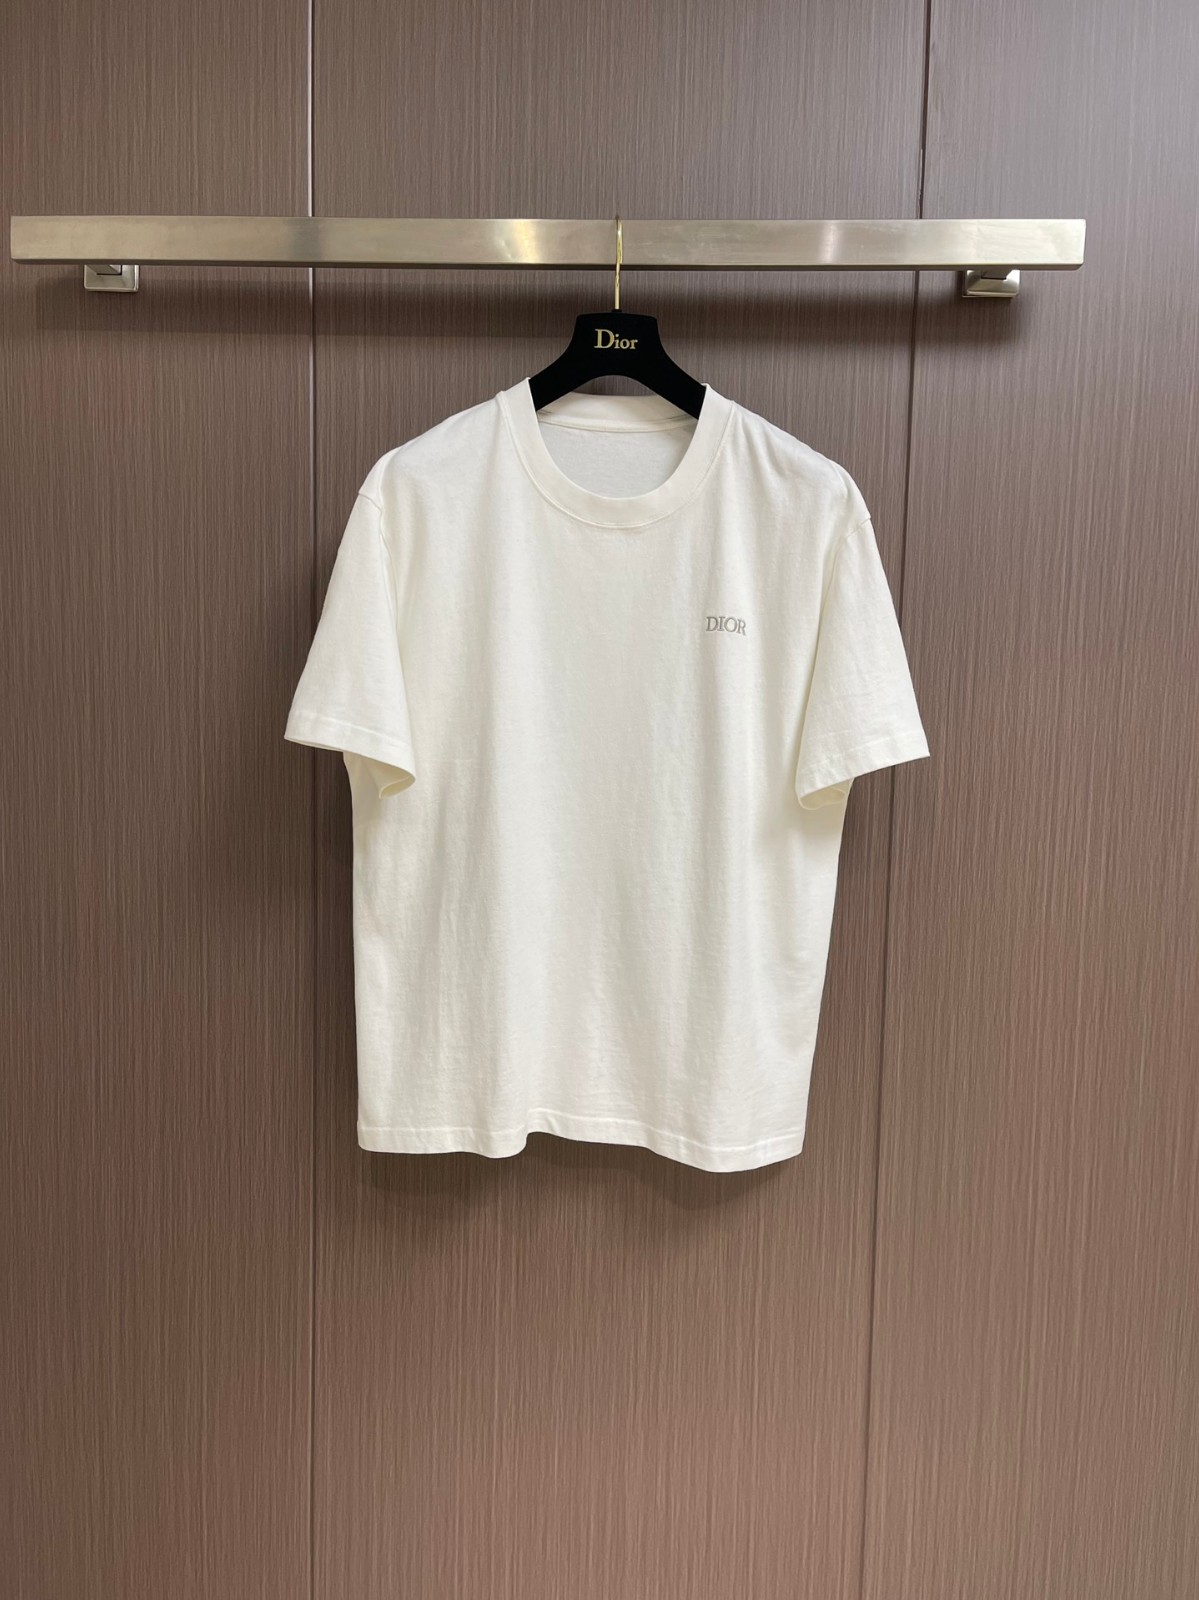 クリスチャン・ディオール Tシャツ コピー シンプル ロゴ入り 半袖Tシャツ ホワイト